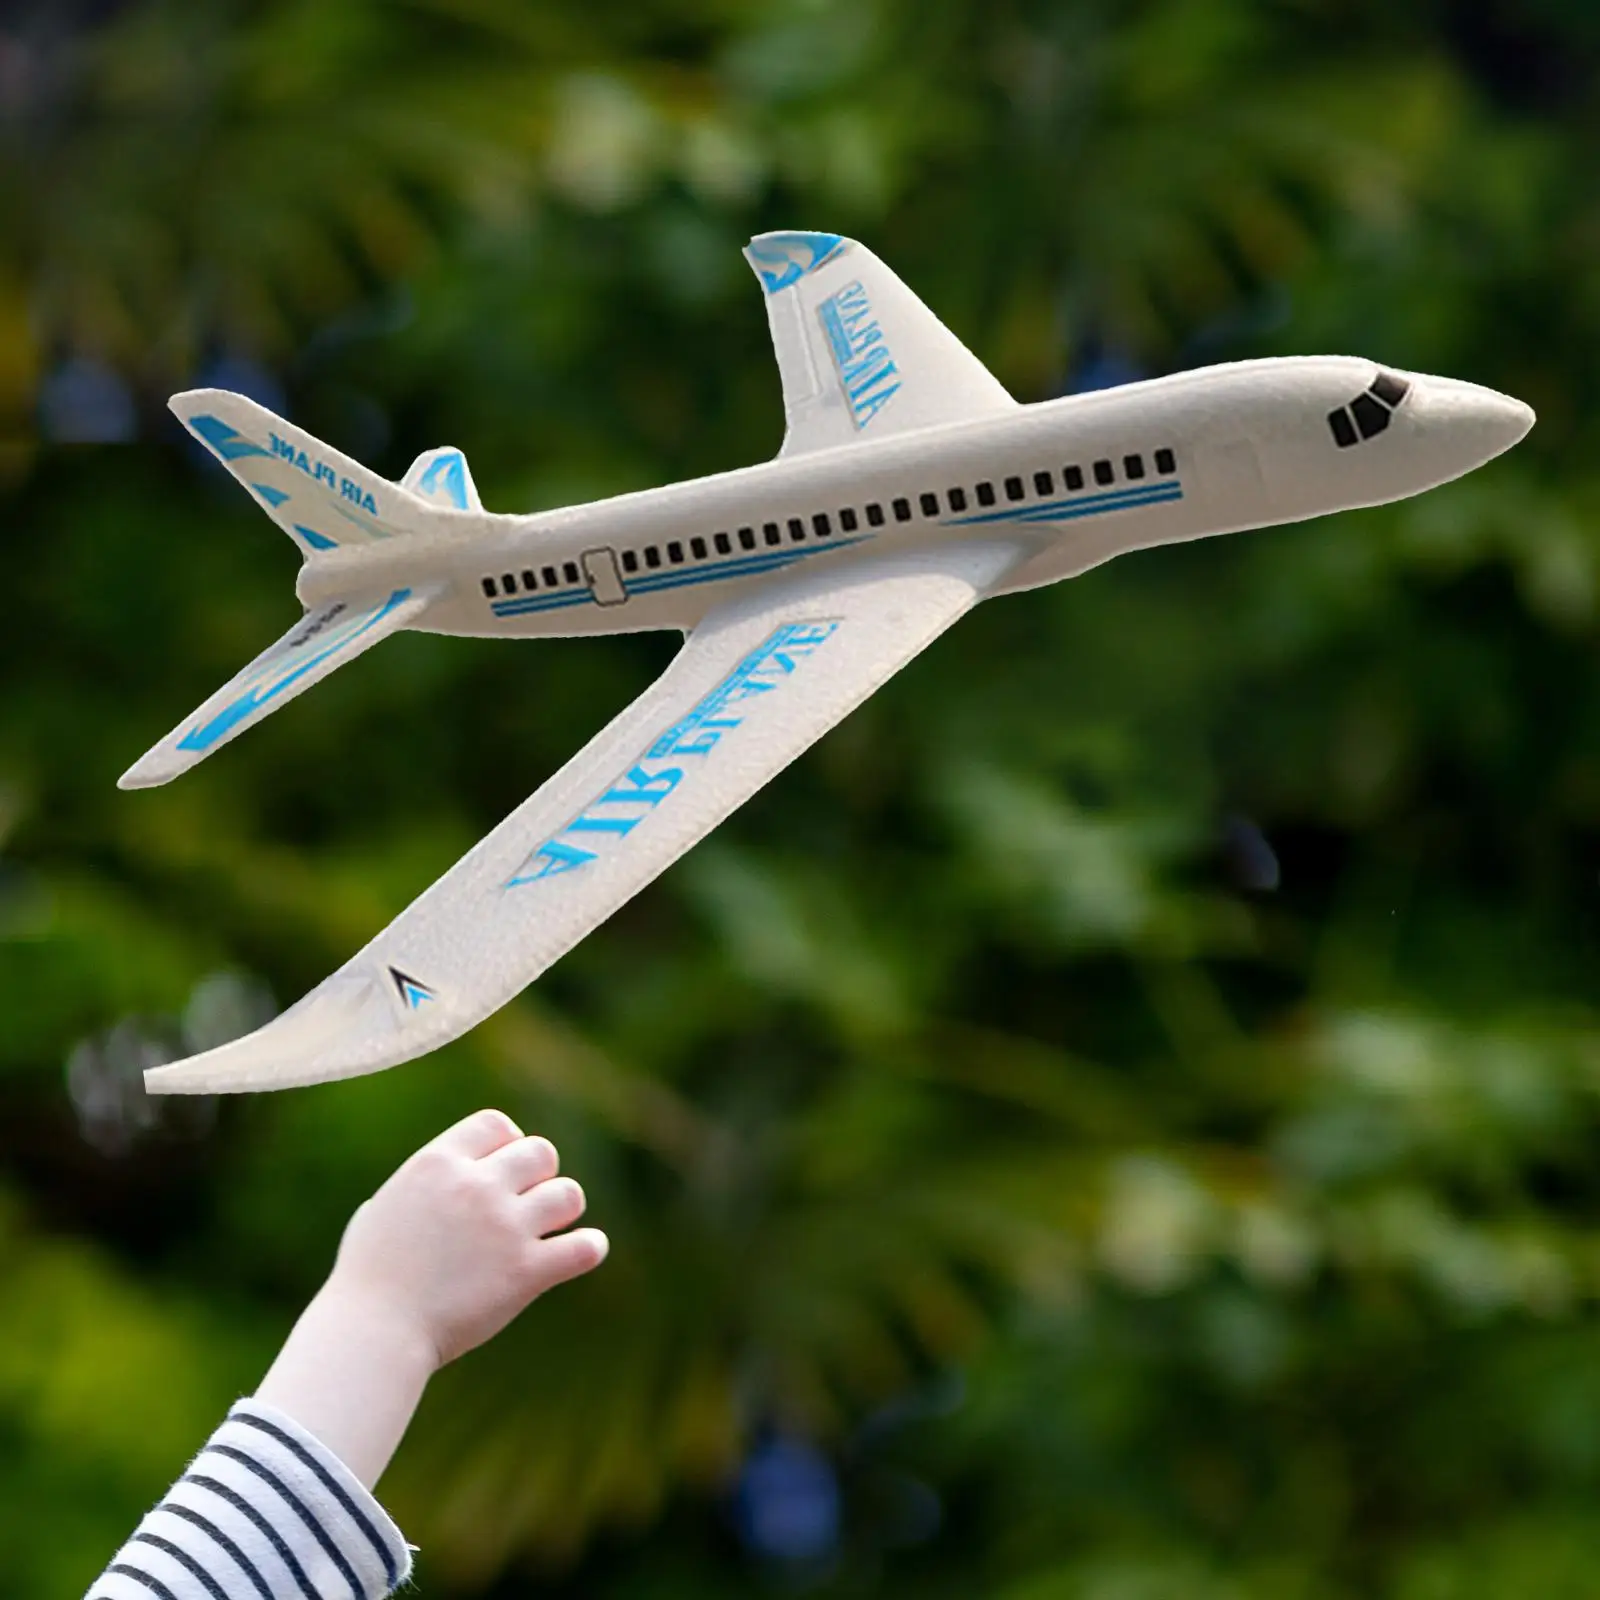 Children Hand Throw Plane Outdoor Toy Aviation Model for Garden